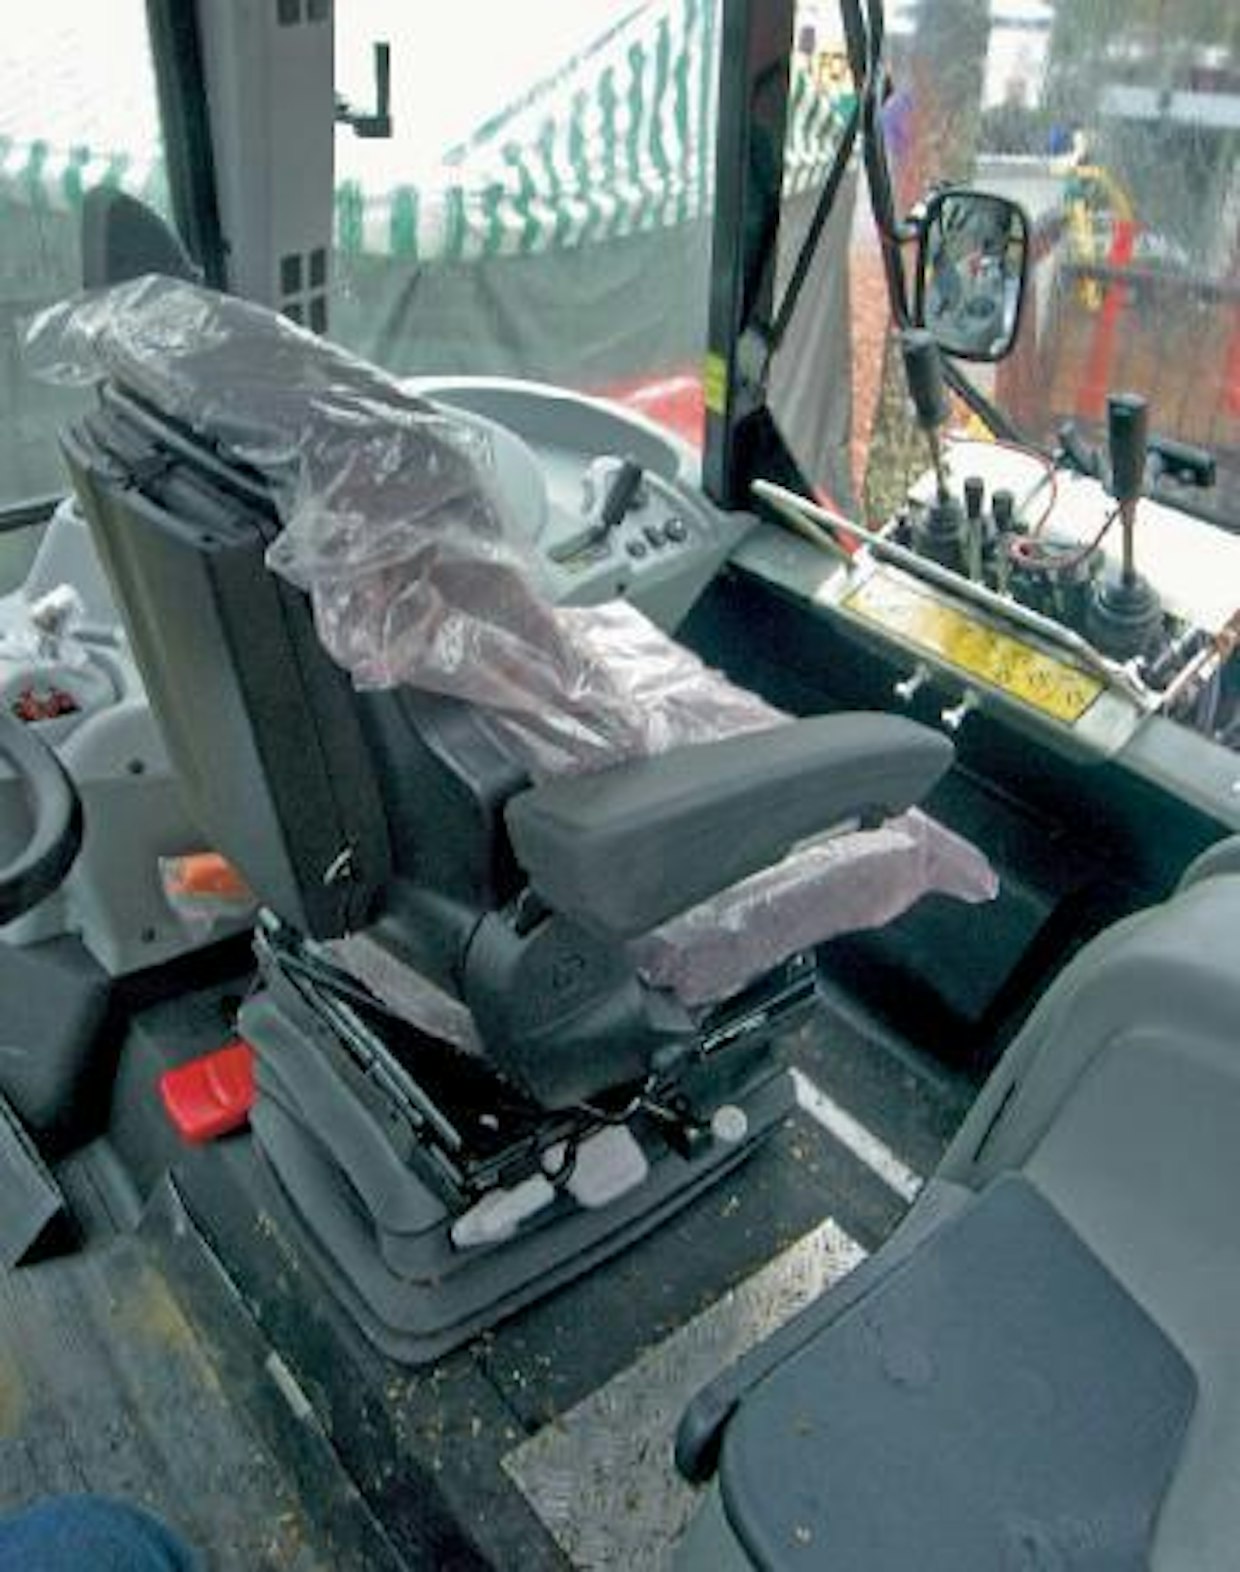 K-maatalous tarjoaa MF 5000 -sarjan traktoreiden ohjaamoihin kotimaista metsävarustusta, joka koostuu kääntyvästä istuimesta ja jalkatilaa lisäävästä takaseinämuutoksesta. (HH)